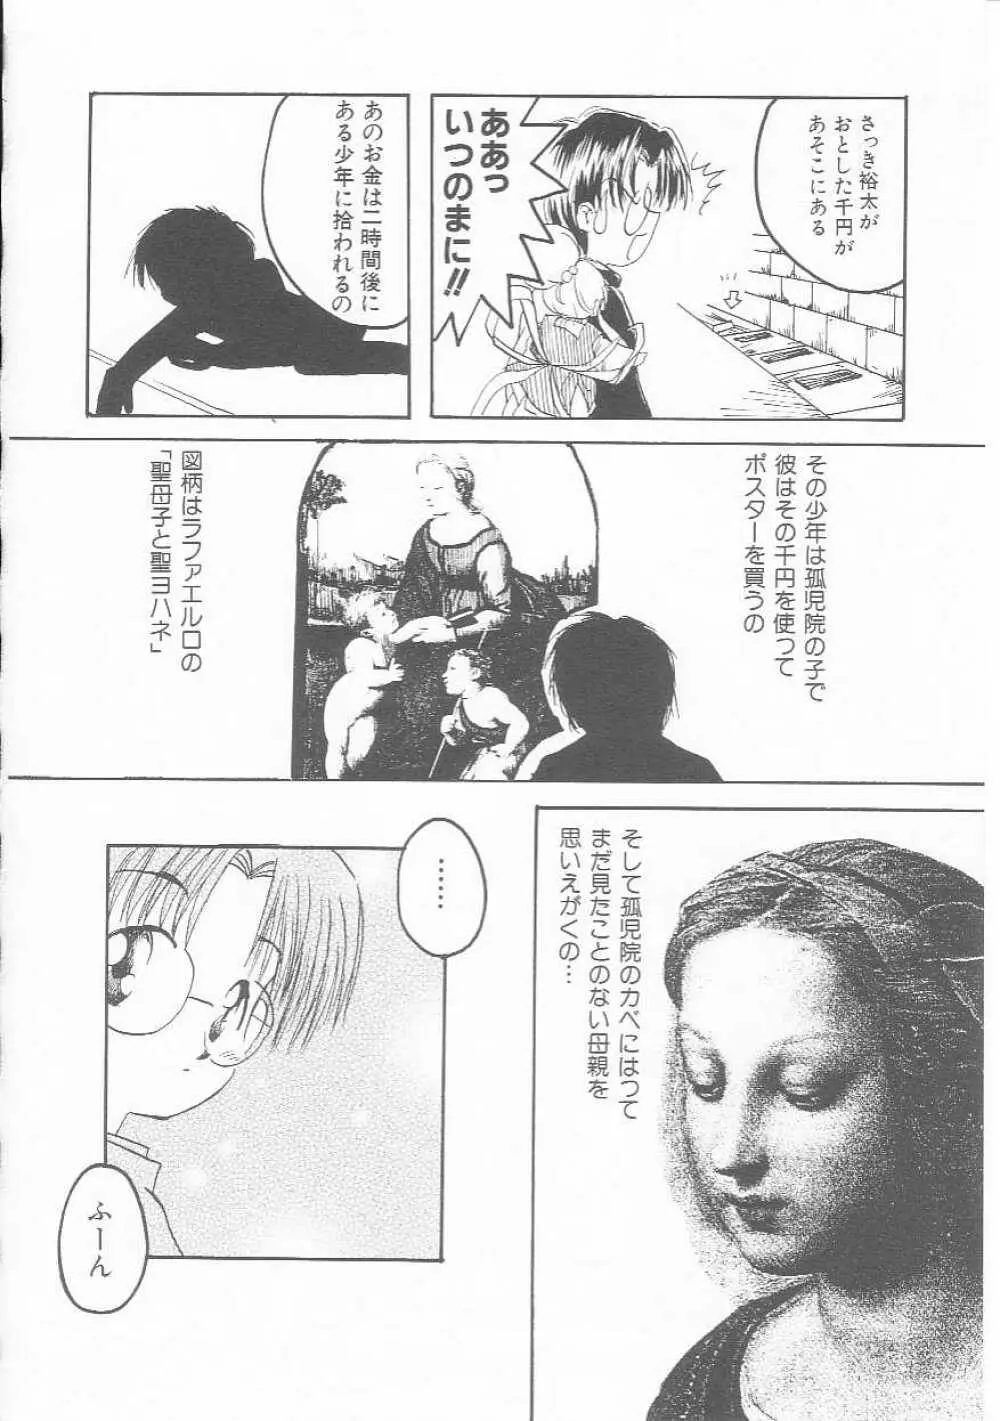 Hin-nyu v01 – Hin-nyu Kurabu.rar 129ページ